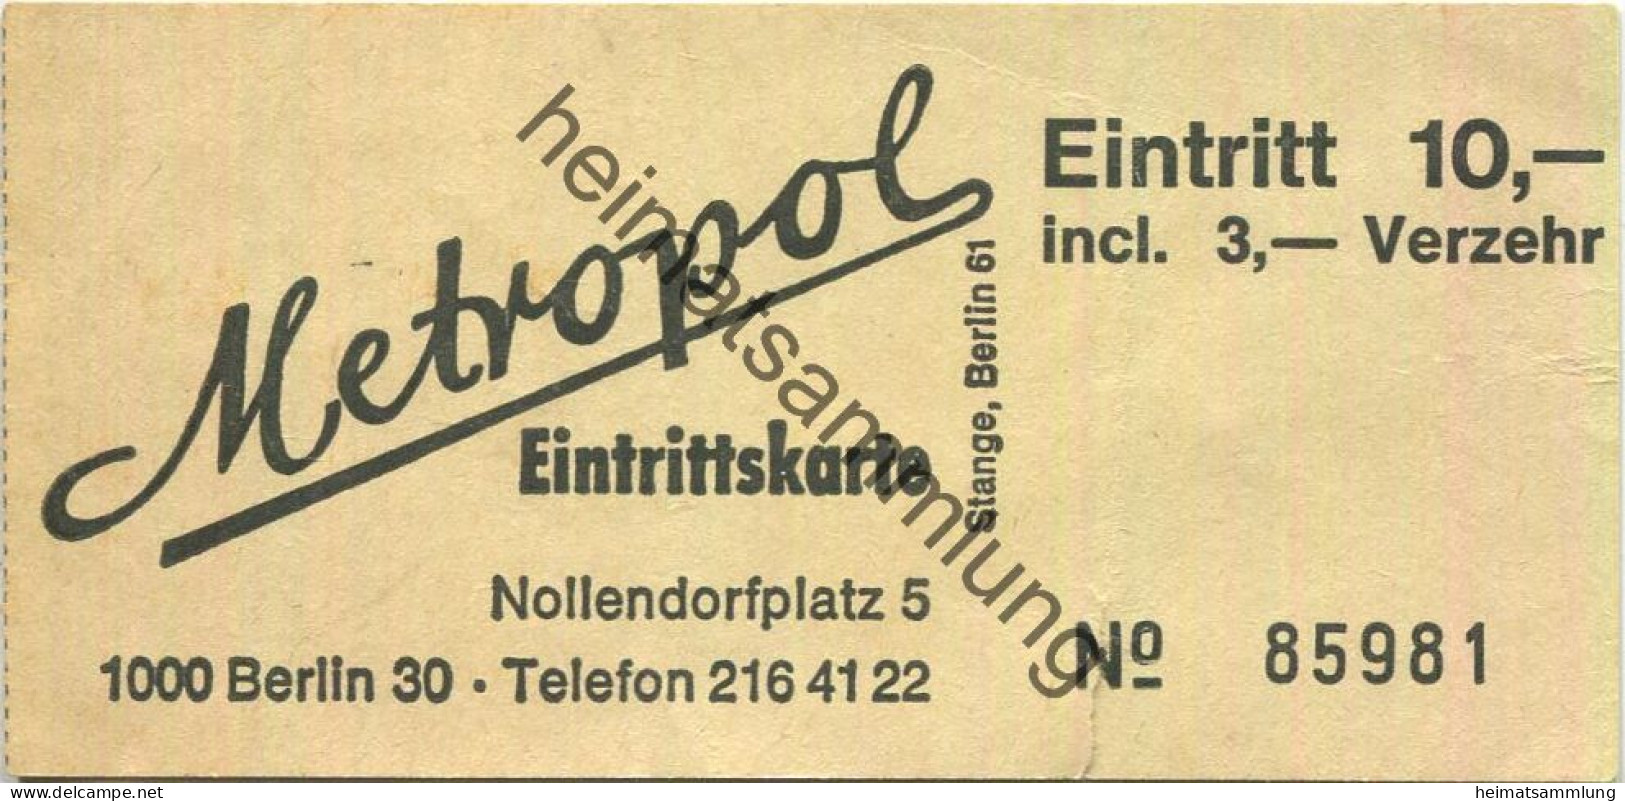 Deutschland - Berlin - Metropol (Diskothek) - Nollendorfplatz 5 - Eintrittskarte - Tickets - Vouchers